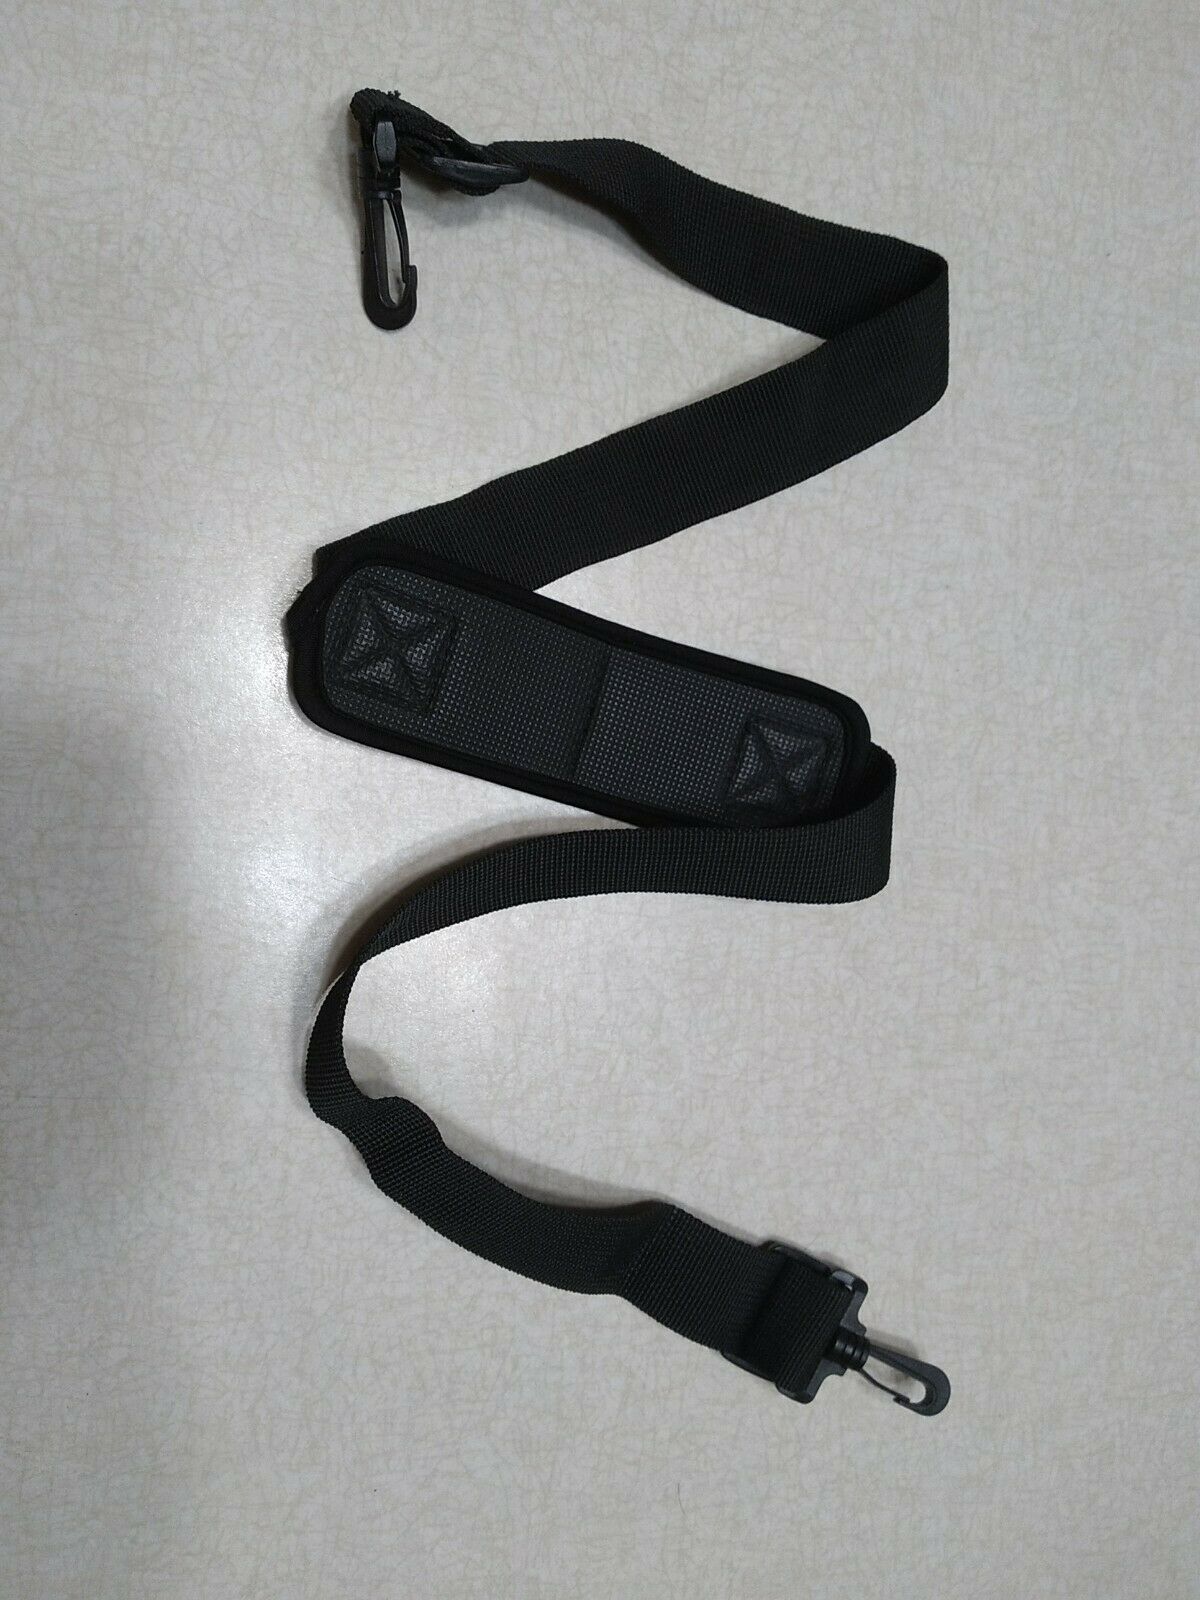 Replacement Luggage Bag Strap Black Shoulder Pad Adjustable